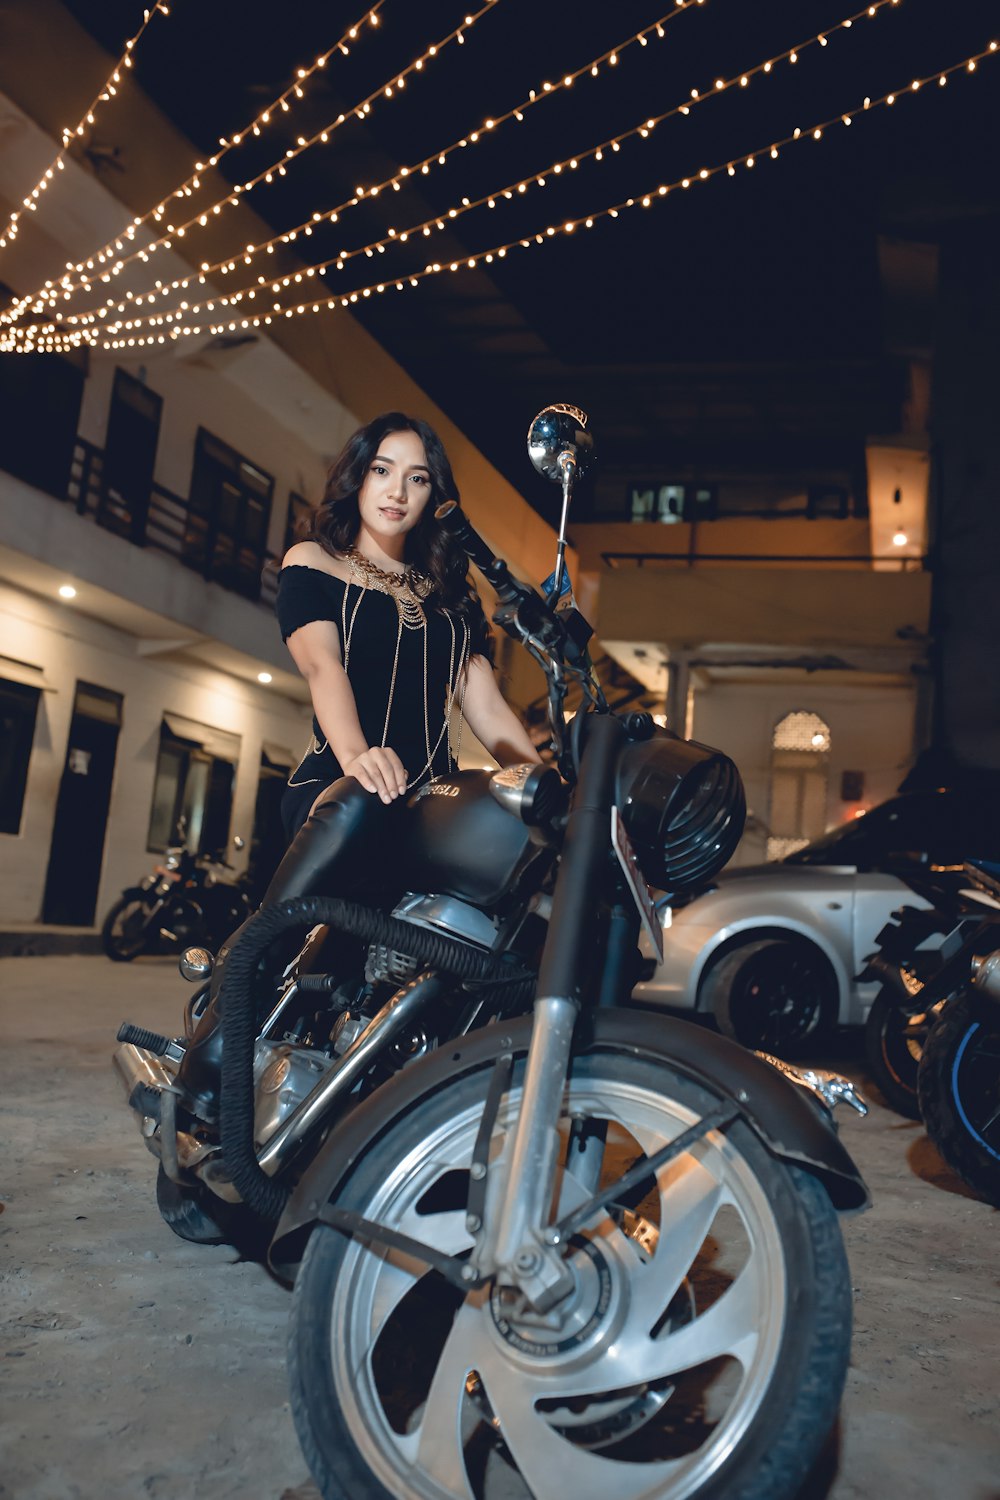 femme en robe noire équitation sur une moto noire pendant la nuit